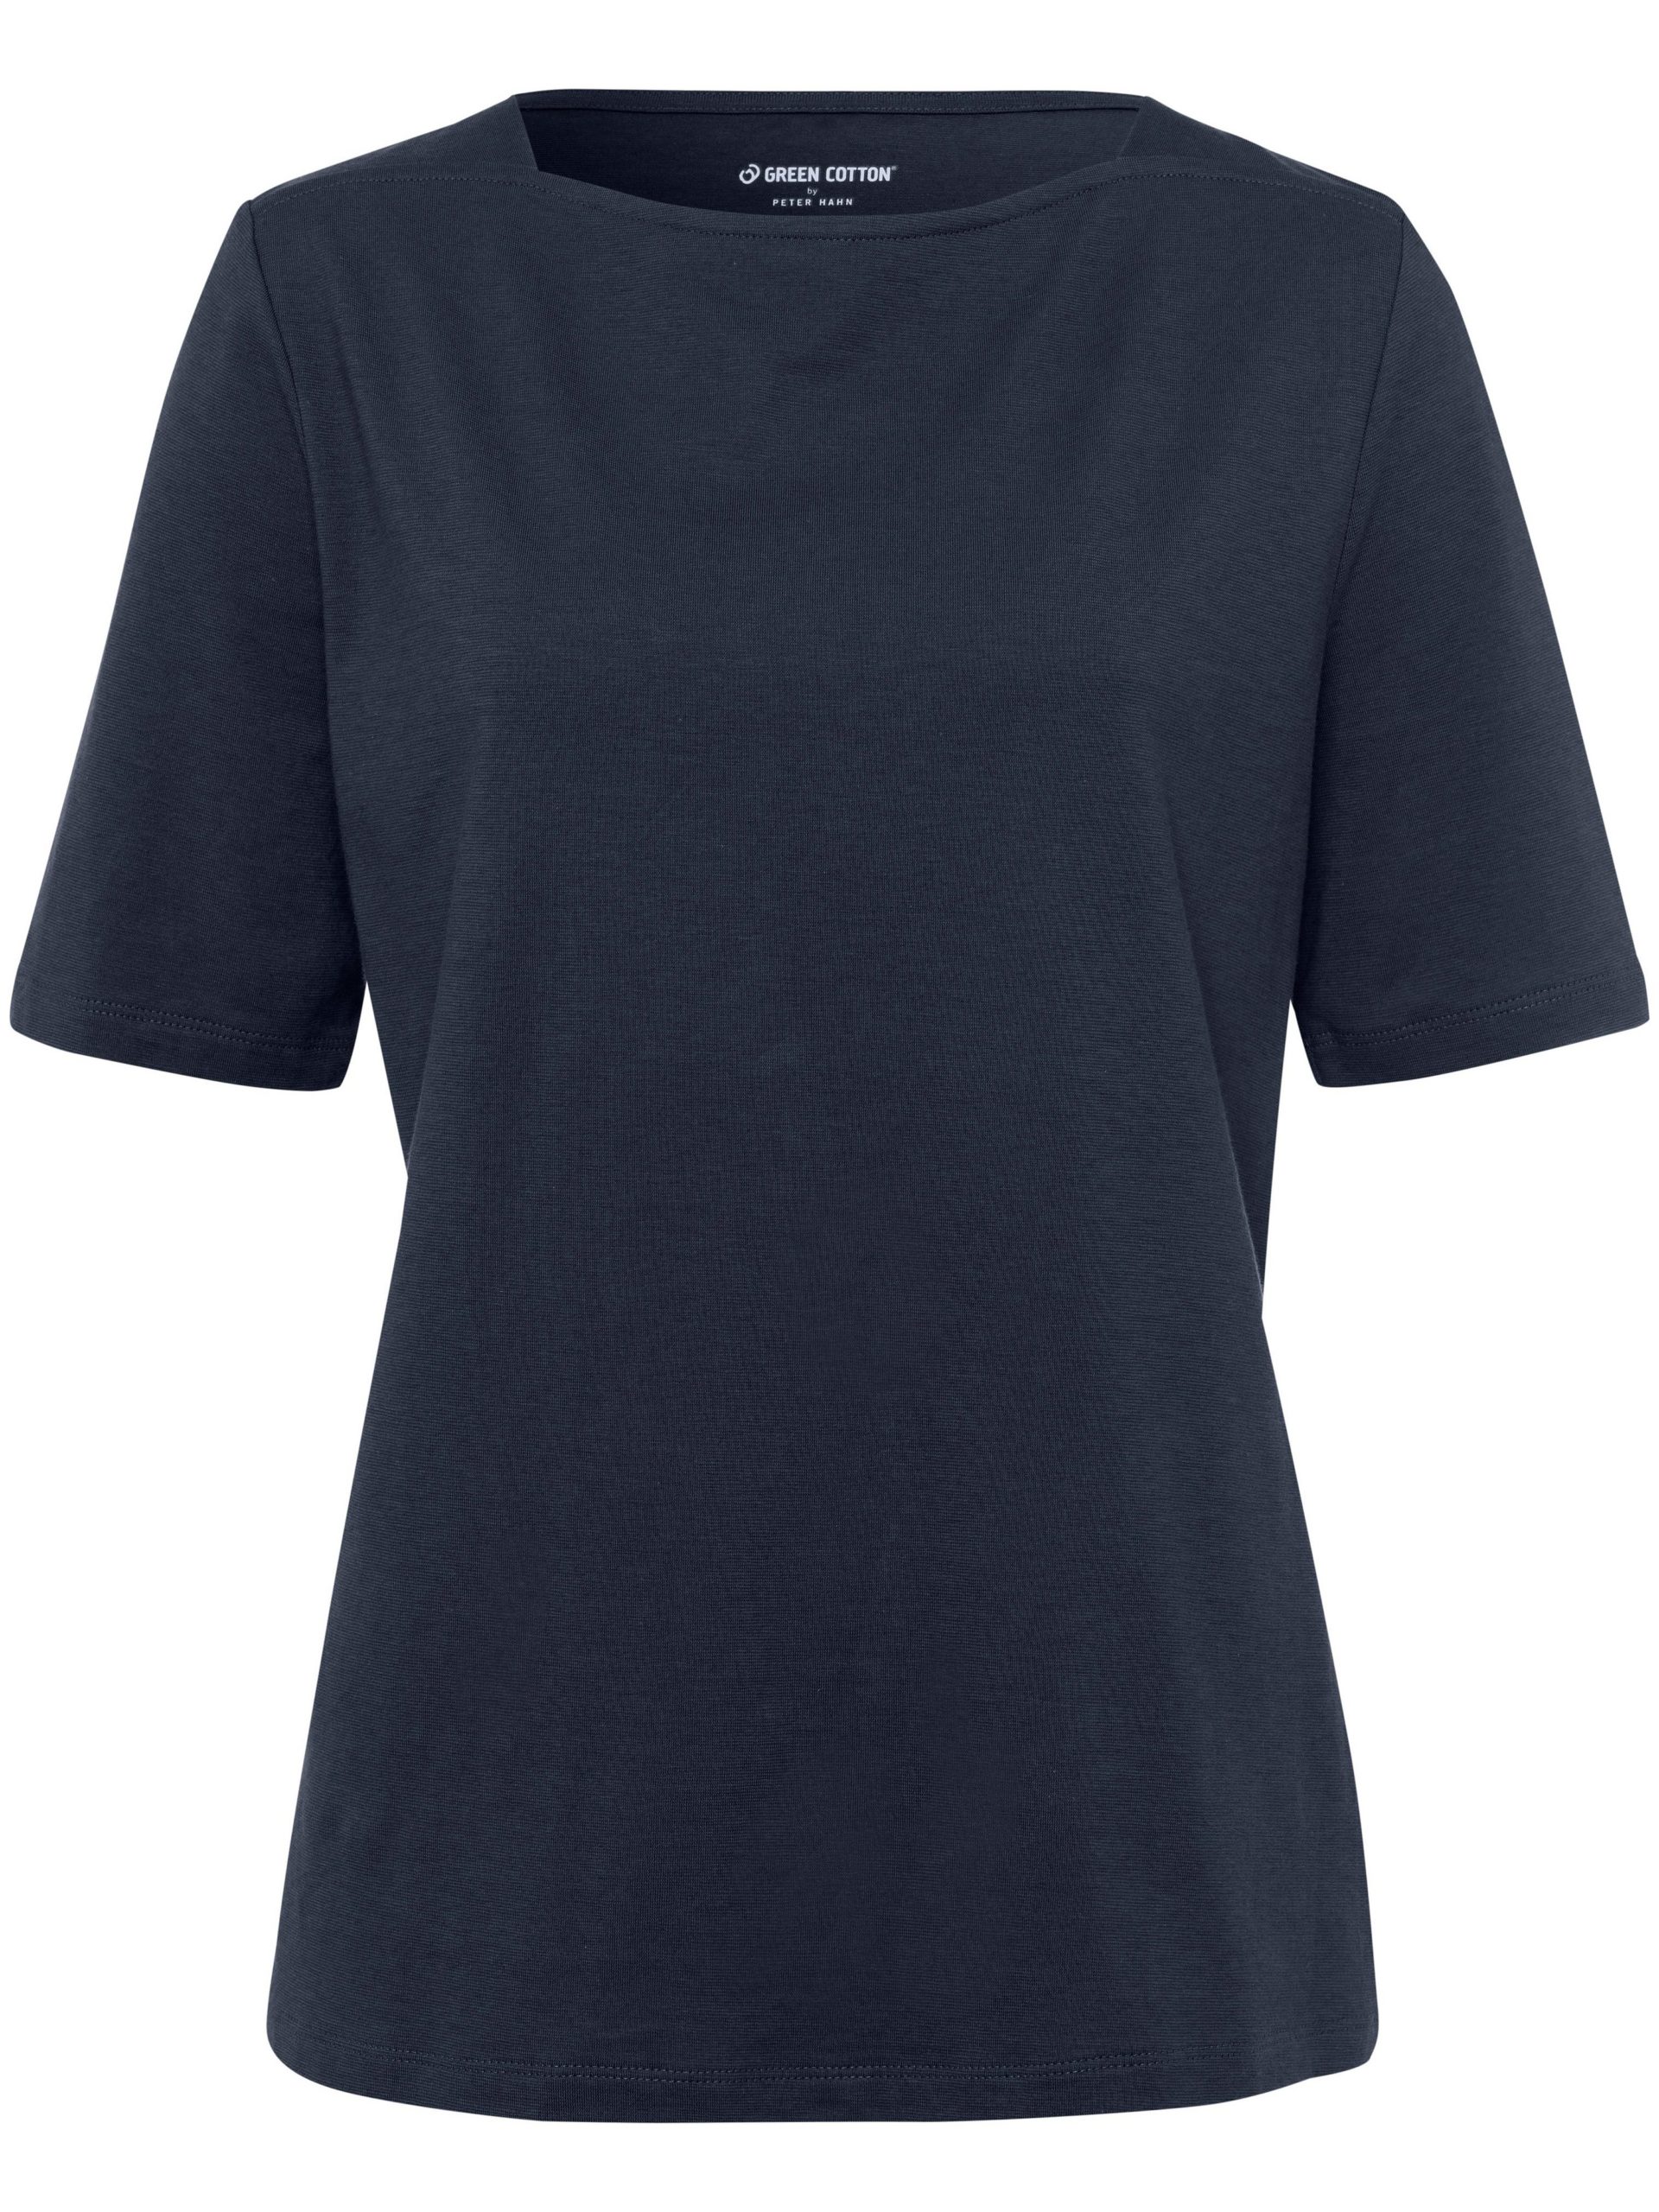 T-shirt van 100% katoen met boothals Van Green Cotton blauw Kopen